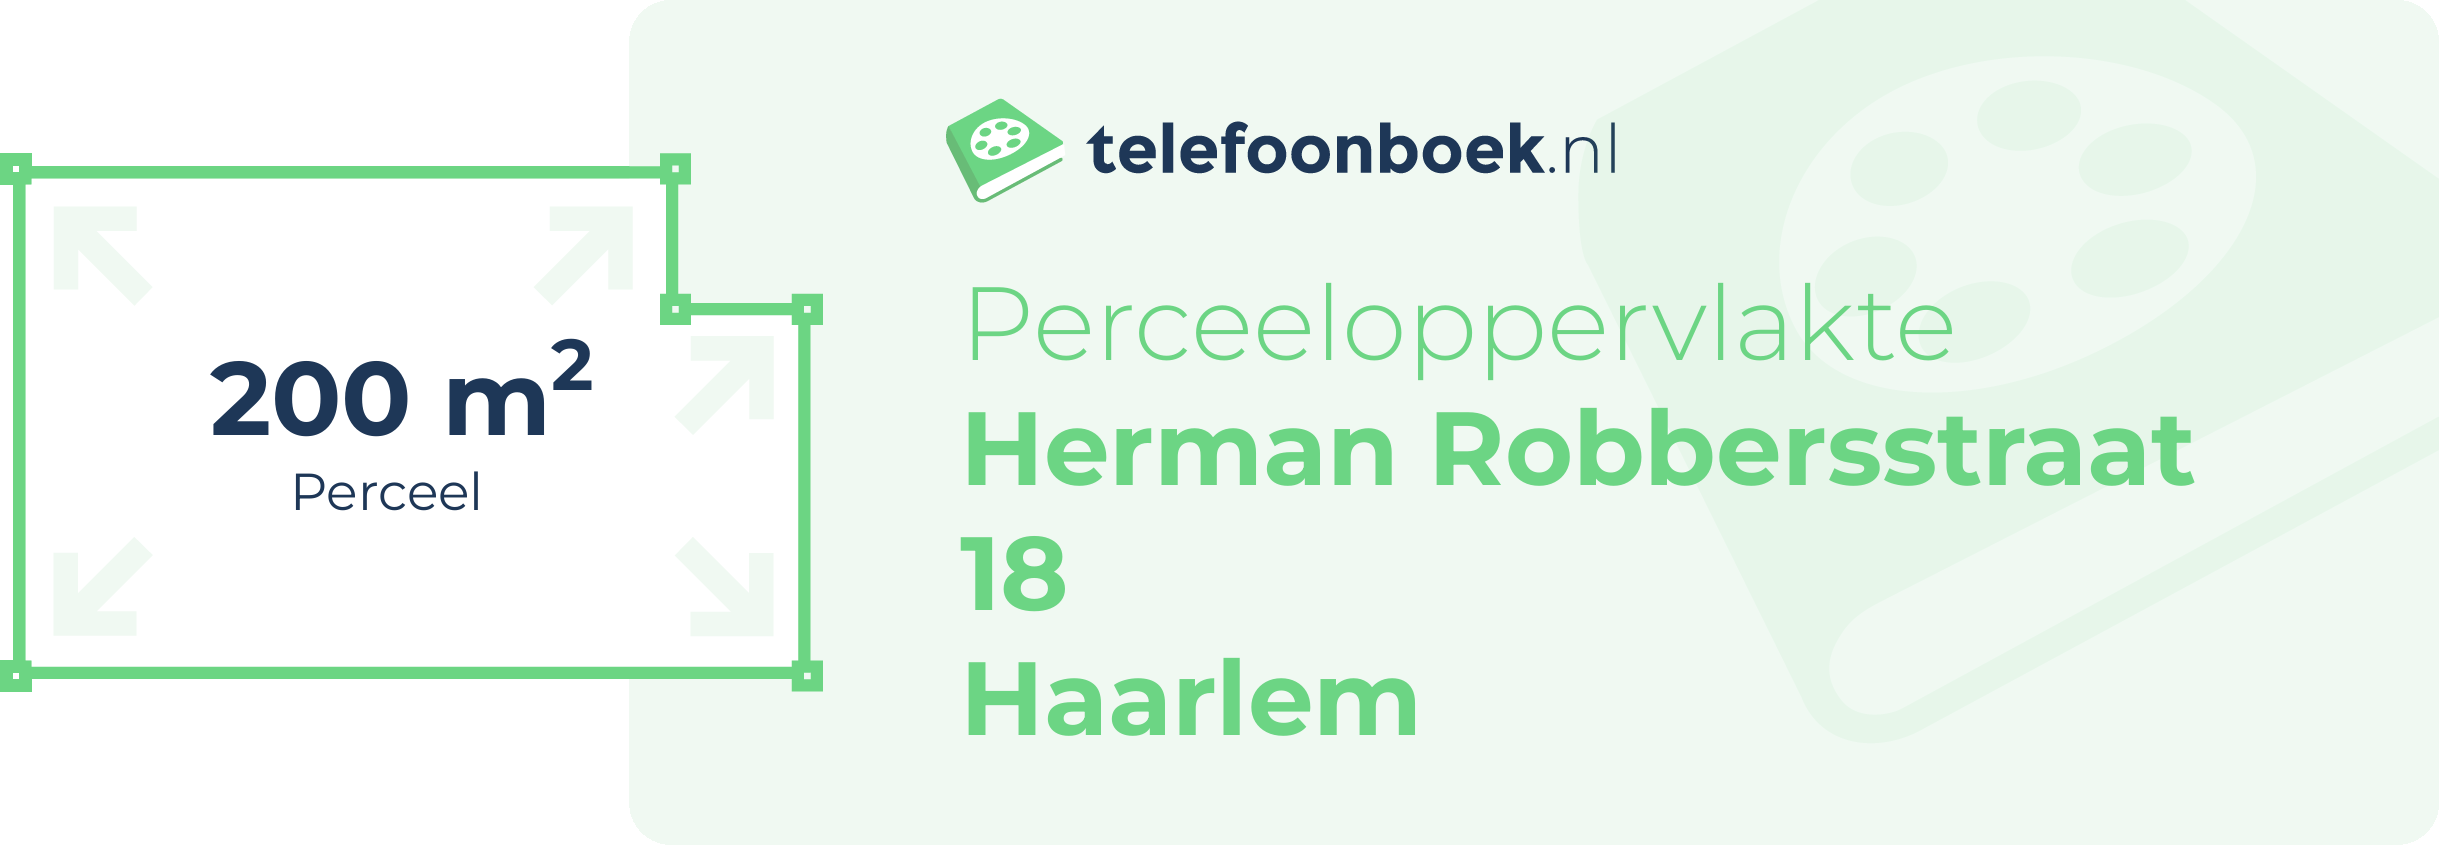 Perceeloppervlakte Herman Robbersstraat 18 Haarlem